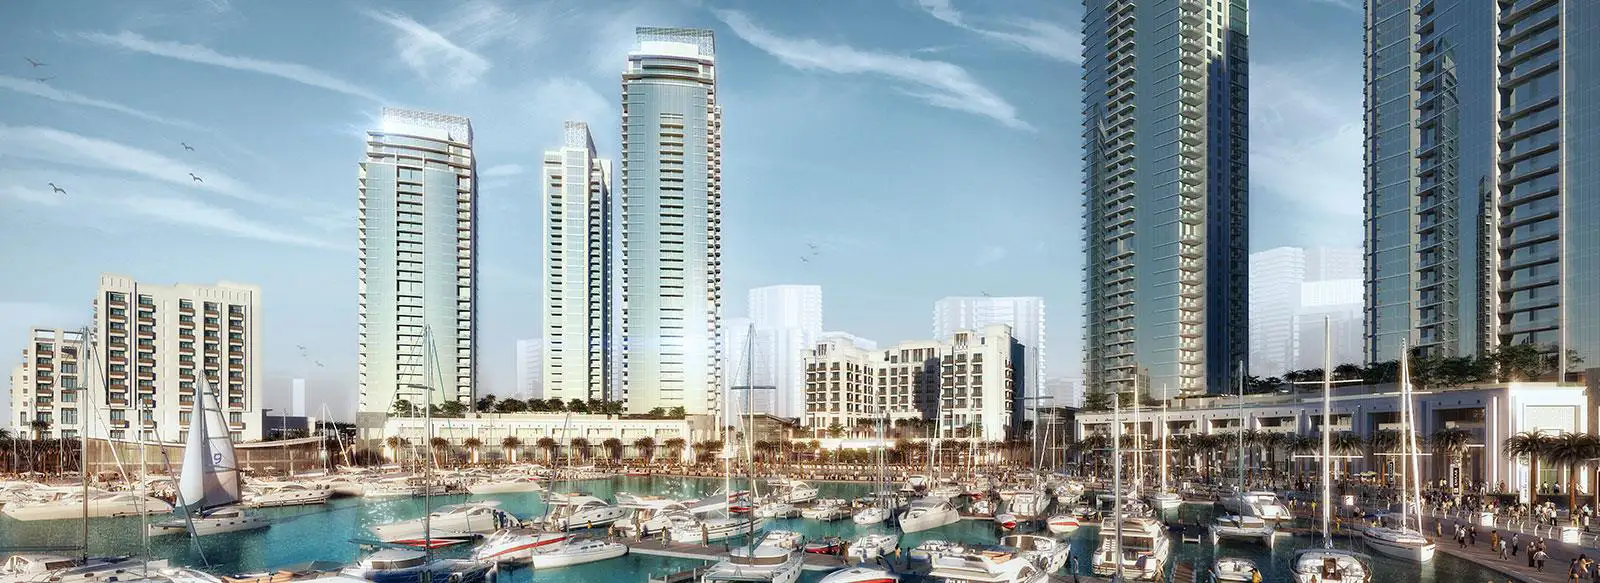 Creek Palace at Dubai Creek Harbour - Emaar Properties